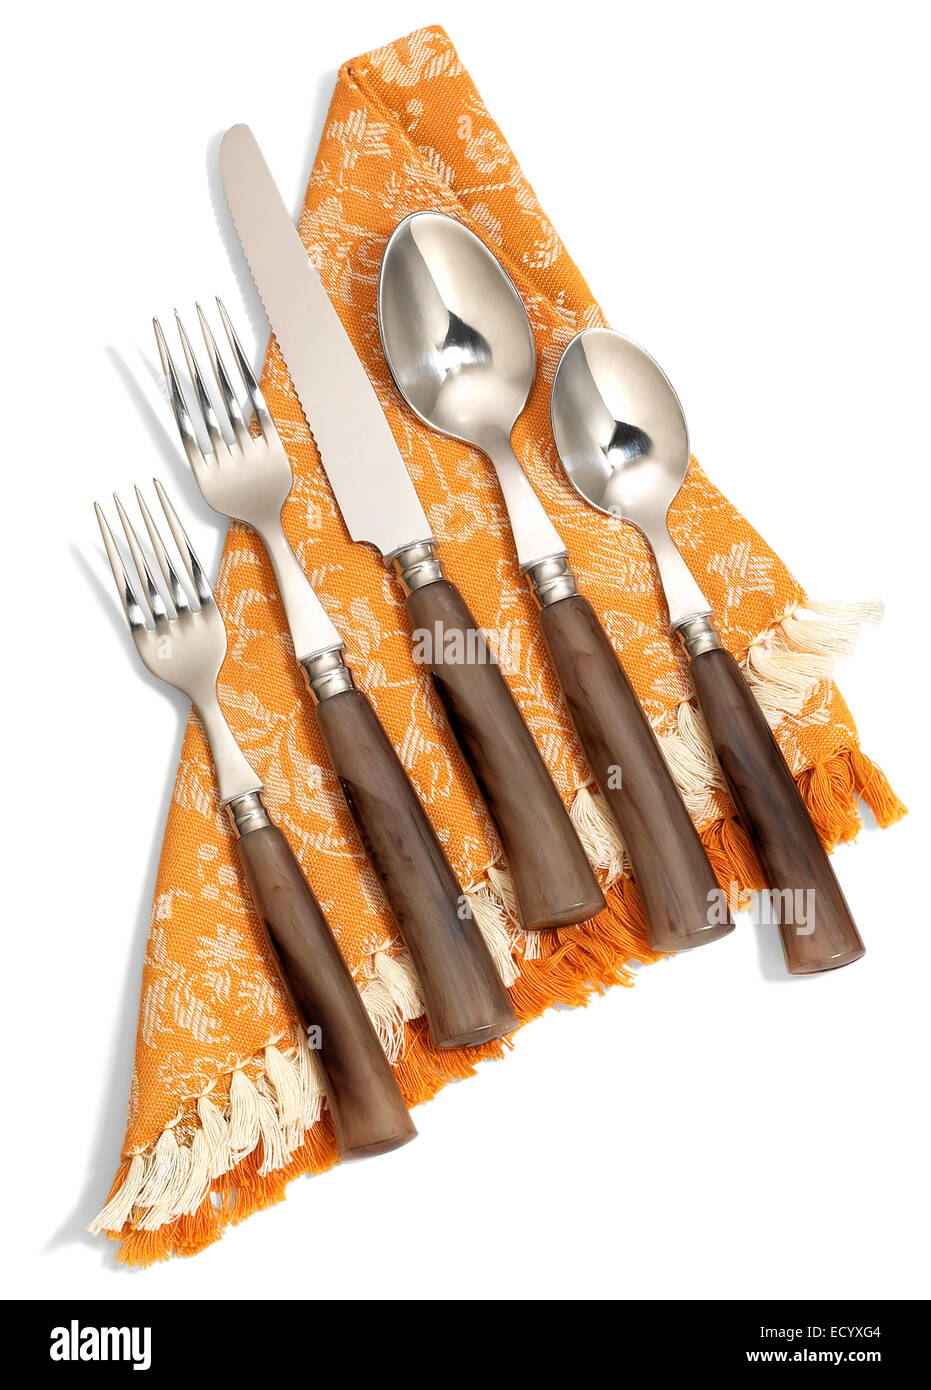 Silberwaren mit braunen gefälschte Holz Kunststoffgriffen auf orange Serviette Stockfoto